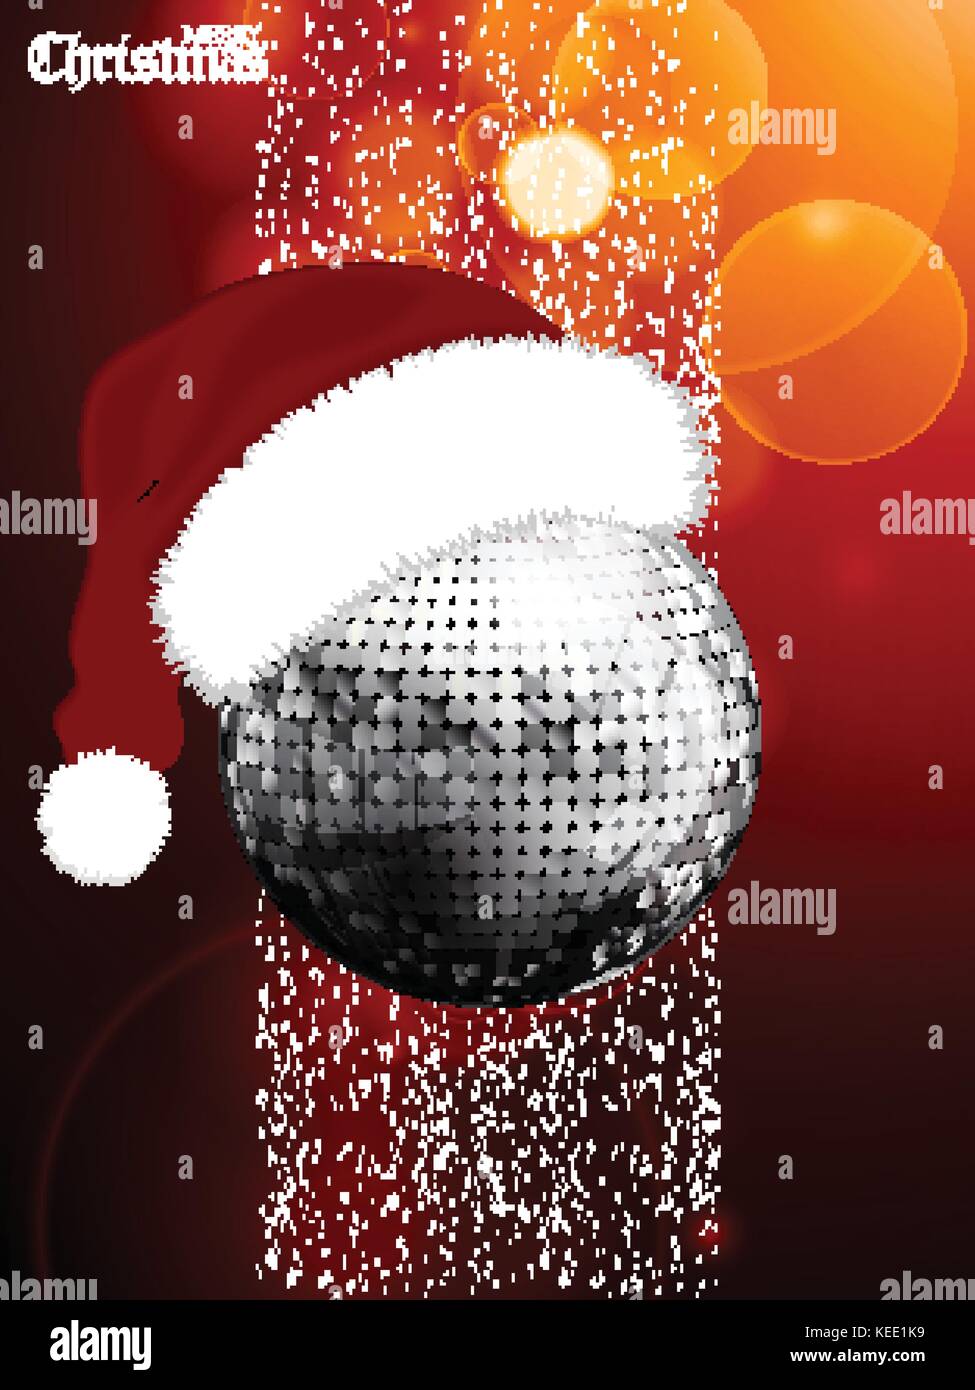 Joyeux noël fête rouge lumineux avec de l'argent fond disco ball with santa hat snow et texte décoratif Illustration de Vecteur